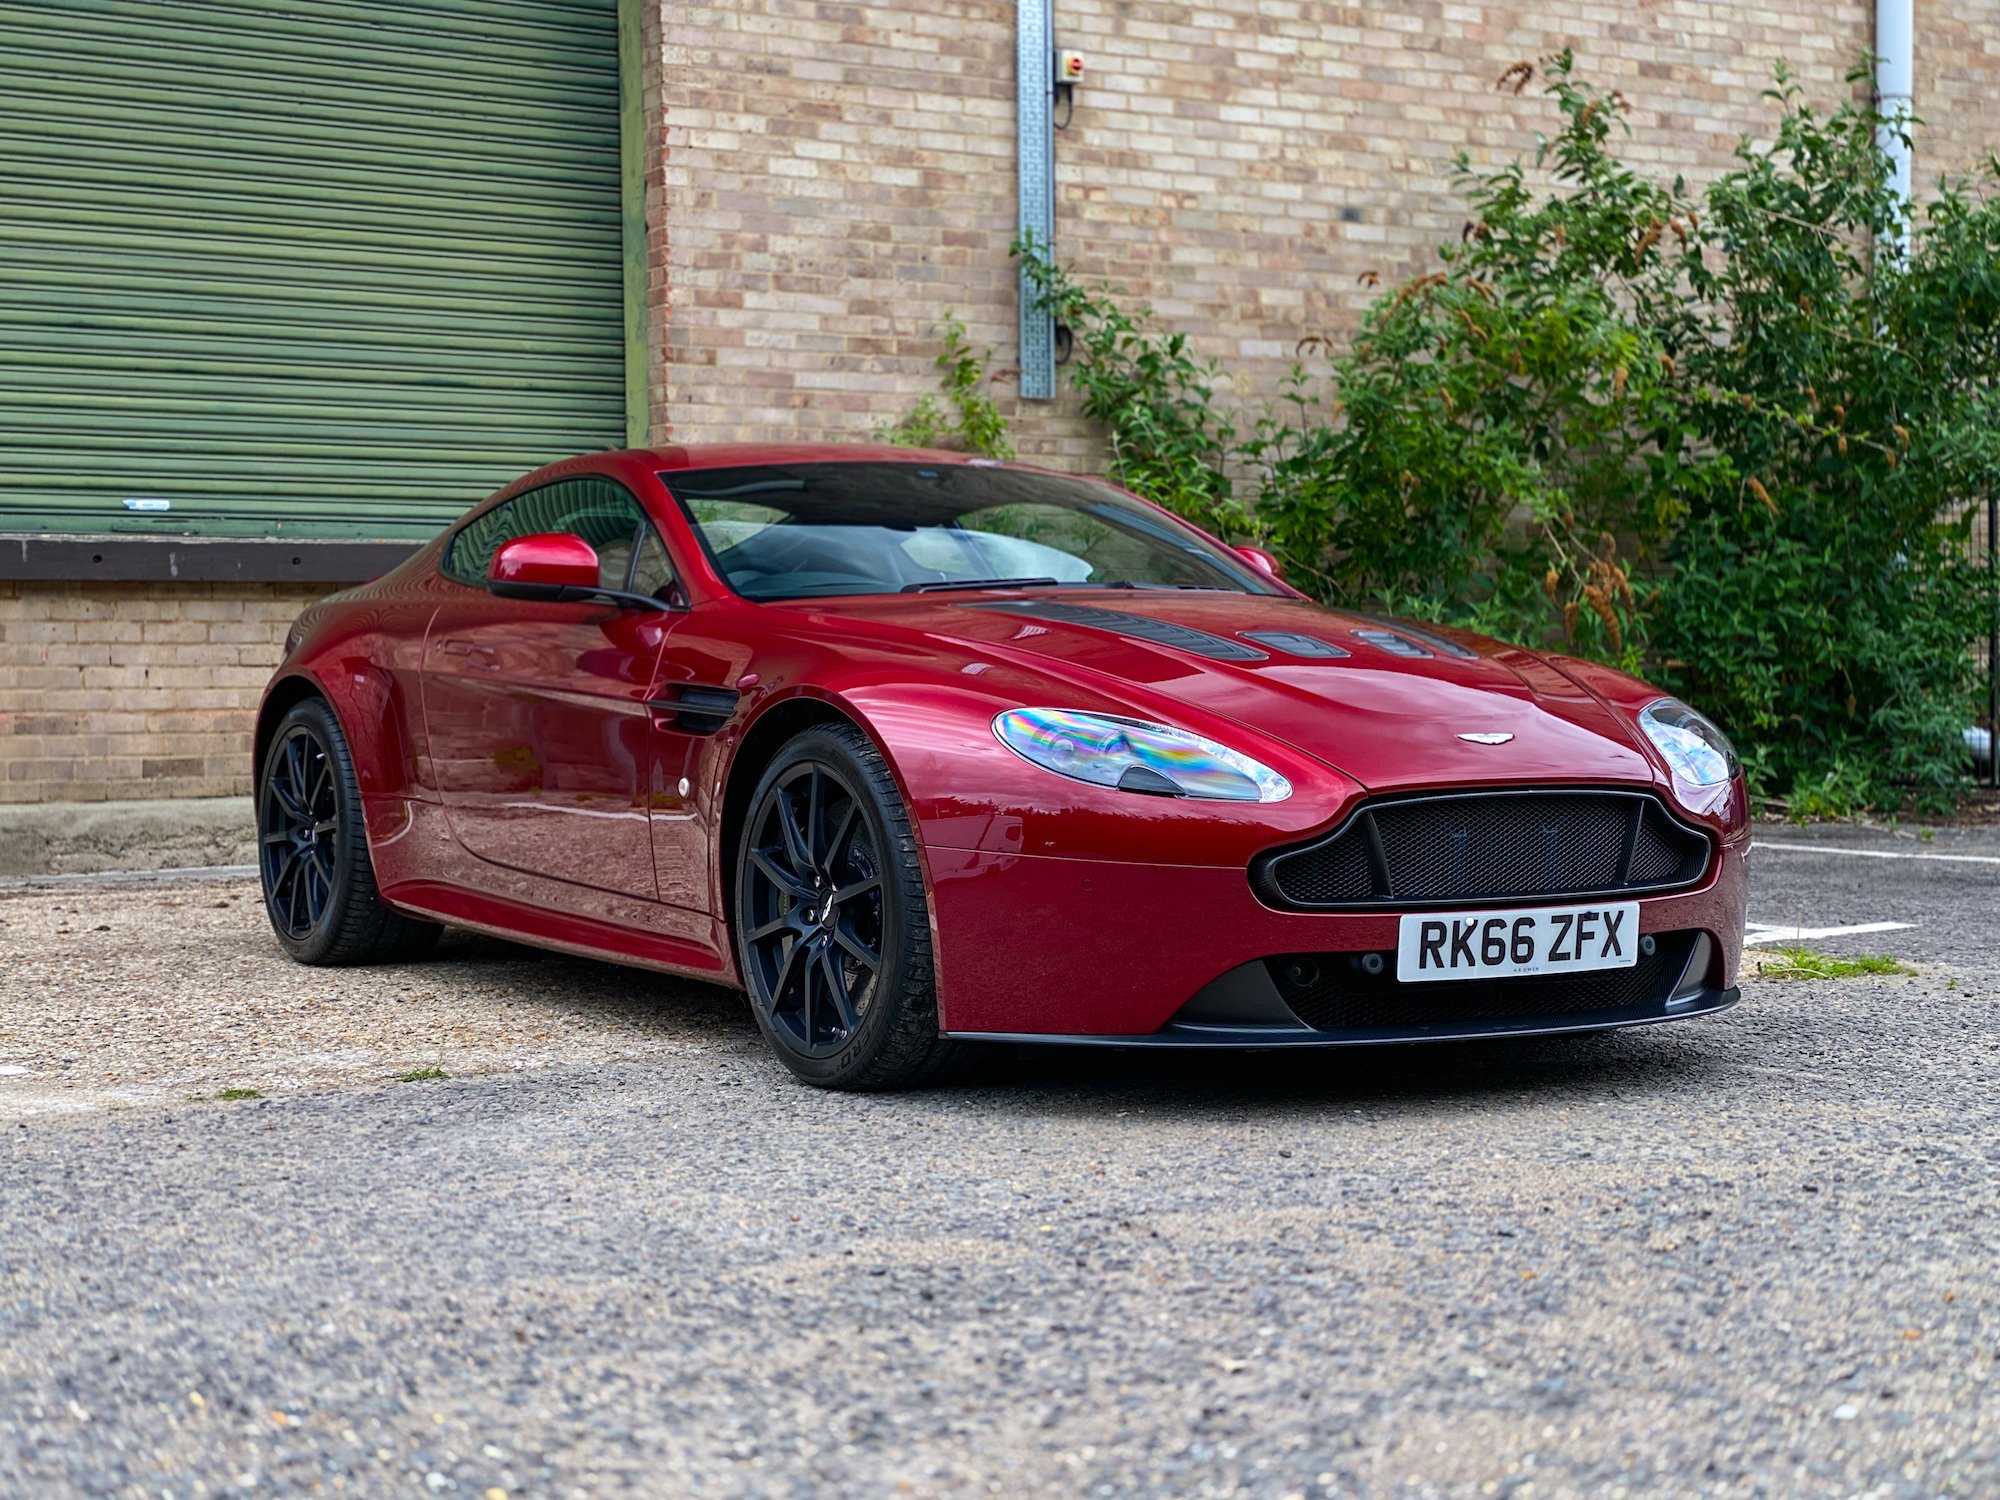 Red Car Tube on "Aston Martin Vantage😍 #AstonMartin #SuperCarCare https://t.co/yQKbwfKsGk" / Twitter